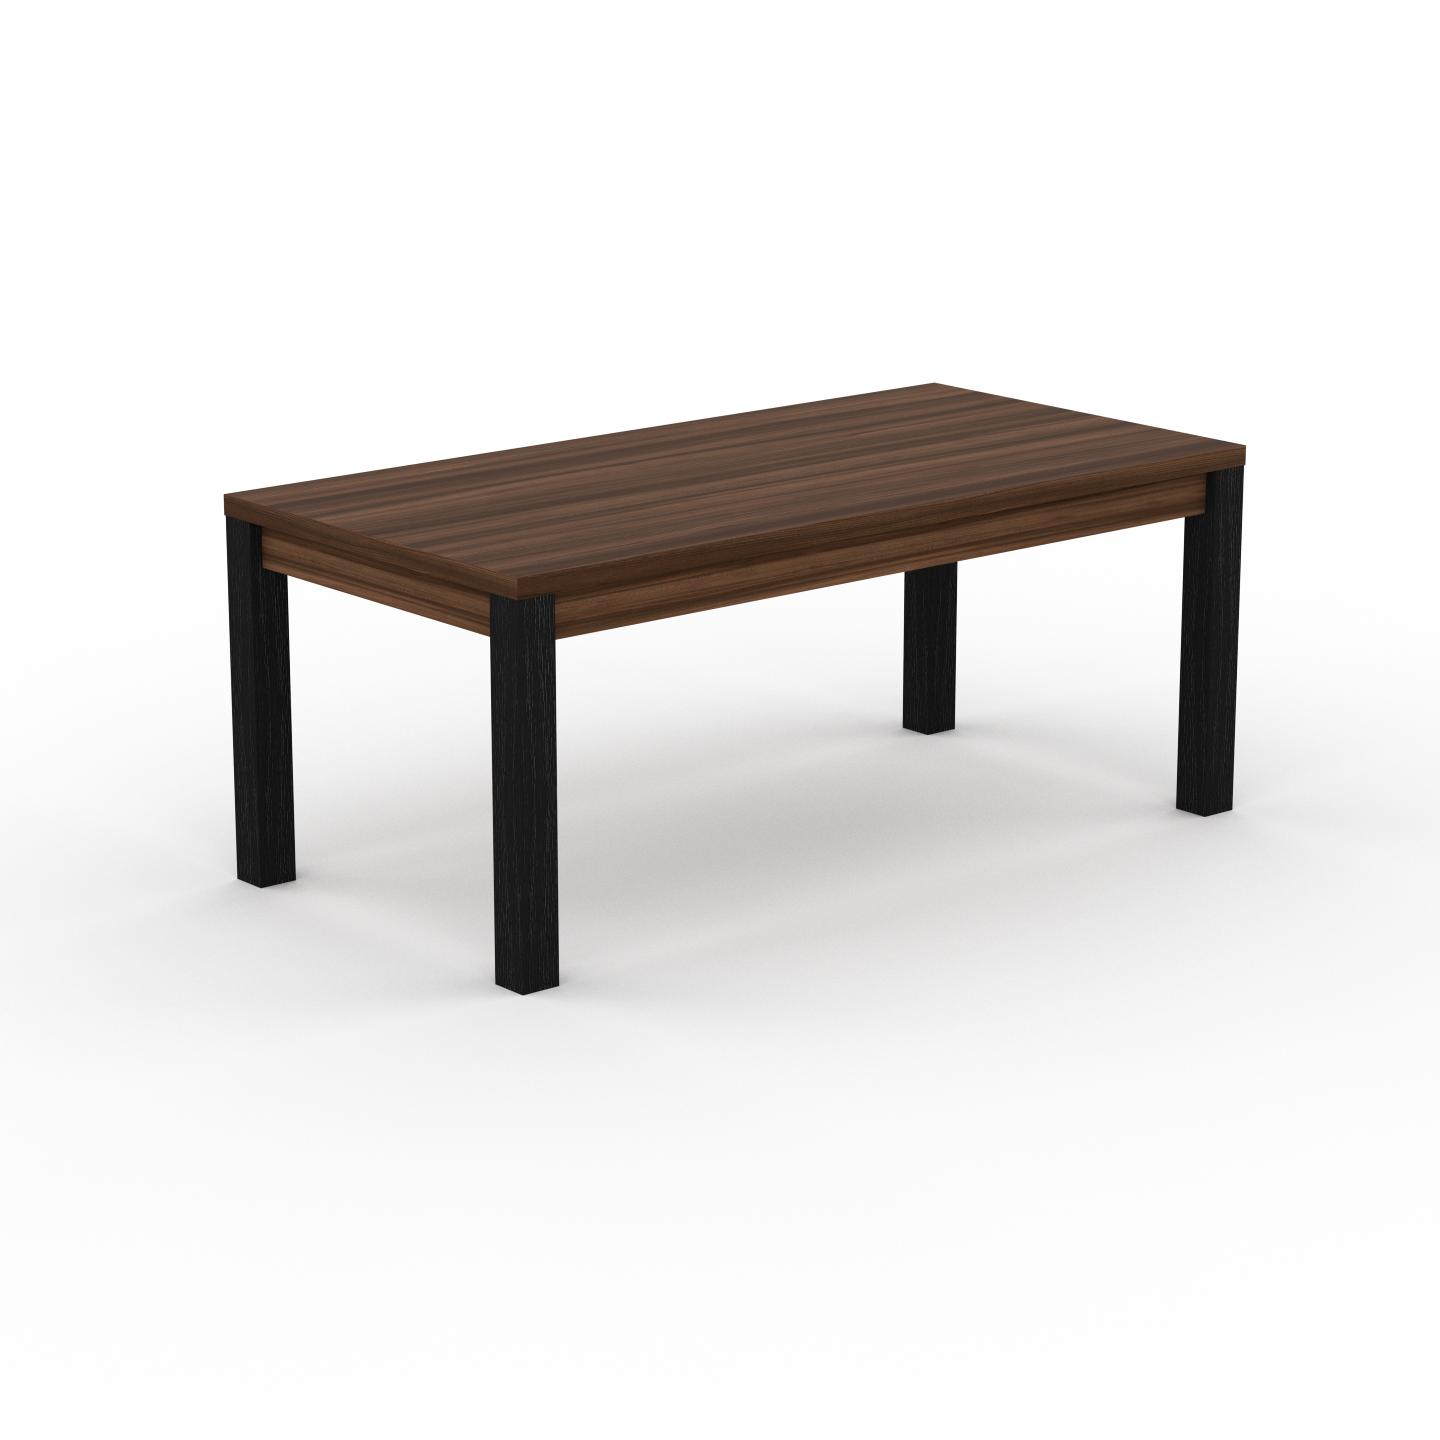 MYCS Holztisch Massivholz Nussbaum - Eleganter Massivholztisch: mit Tischrahmen, hochwertige Materialien - 180 x 76 x 90 cm, konfigurierbar